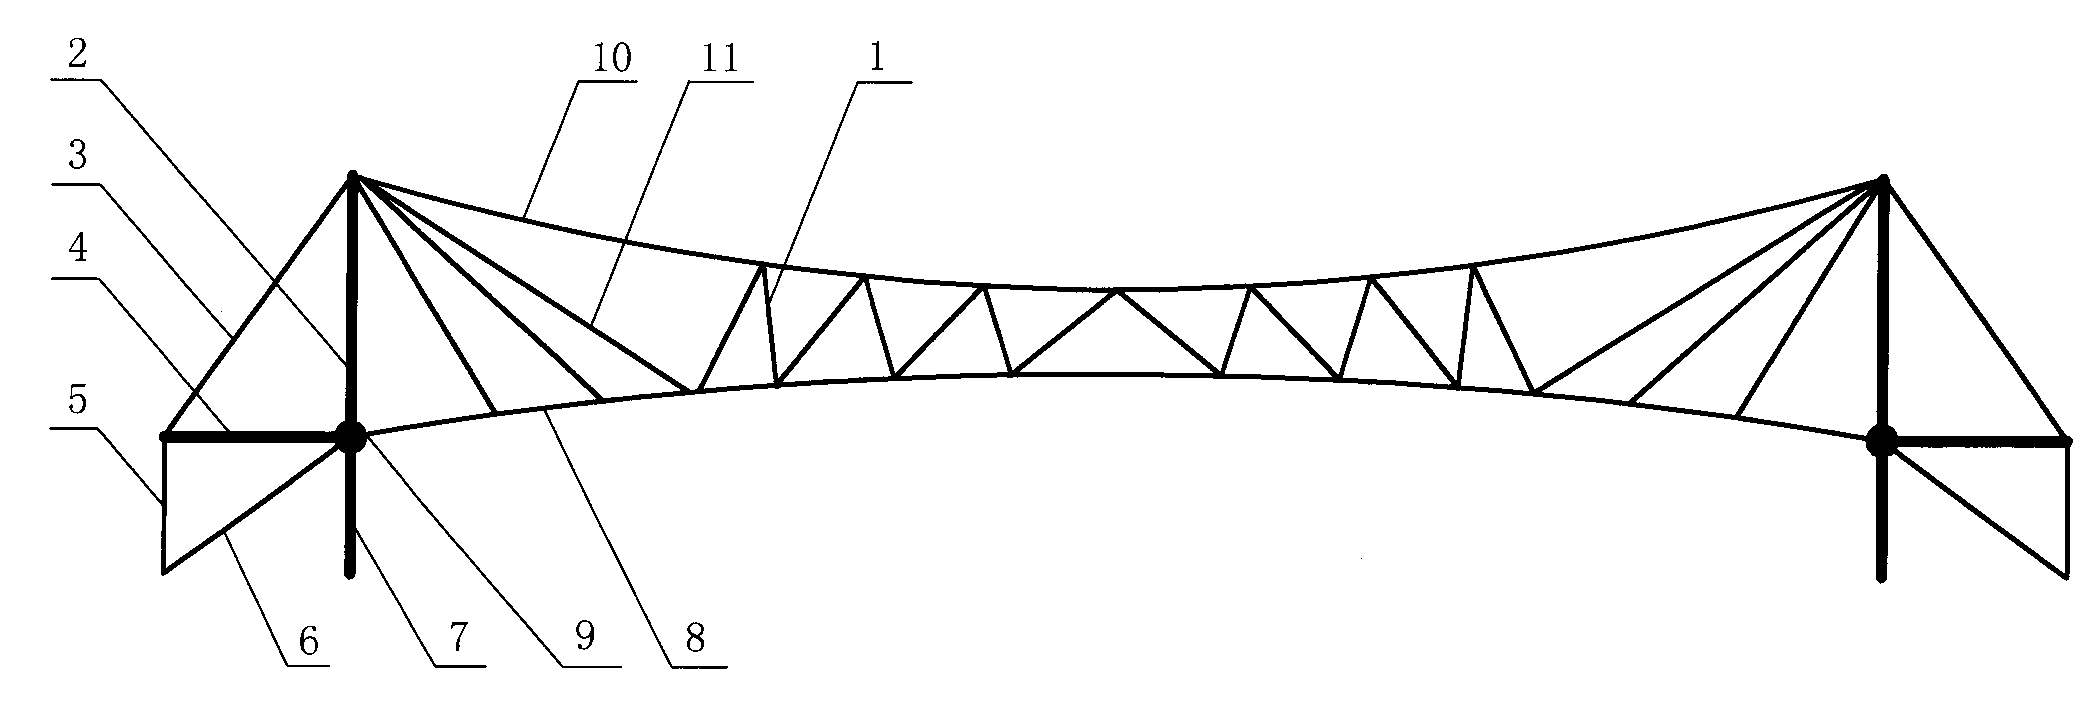 桅杆斜拉索和悬索的组合索桁张拉整体结构